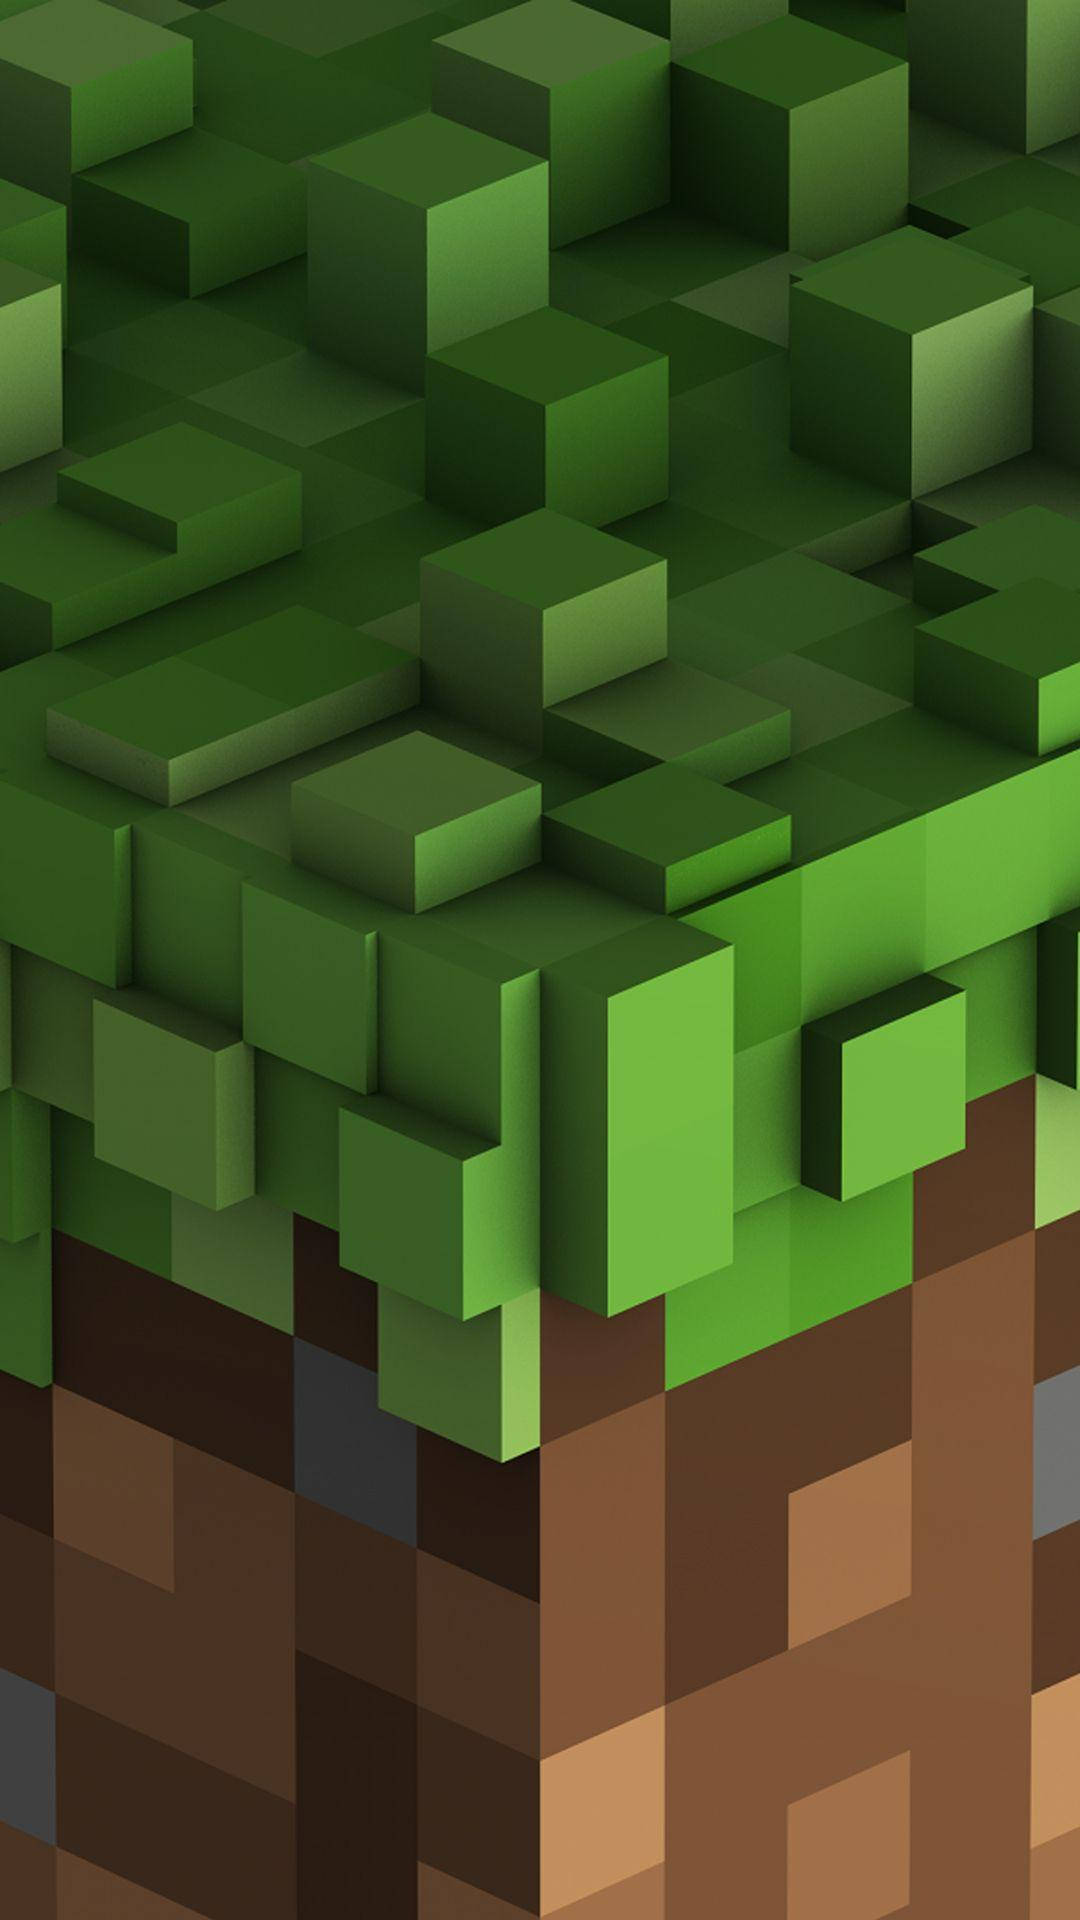 Papelde Parede Do Celular Minecraft De Bloco Verde-marrom. Papel de Parede